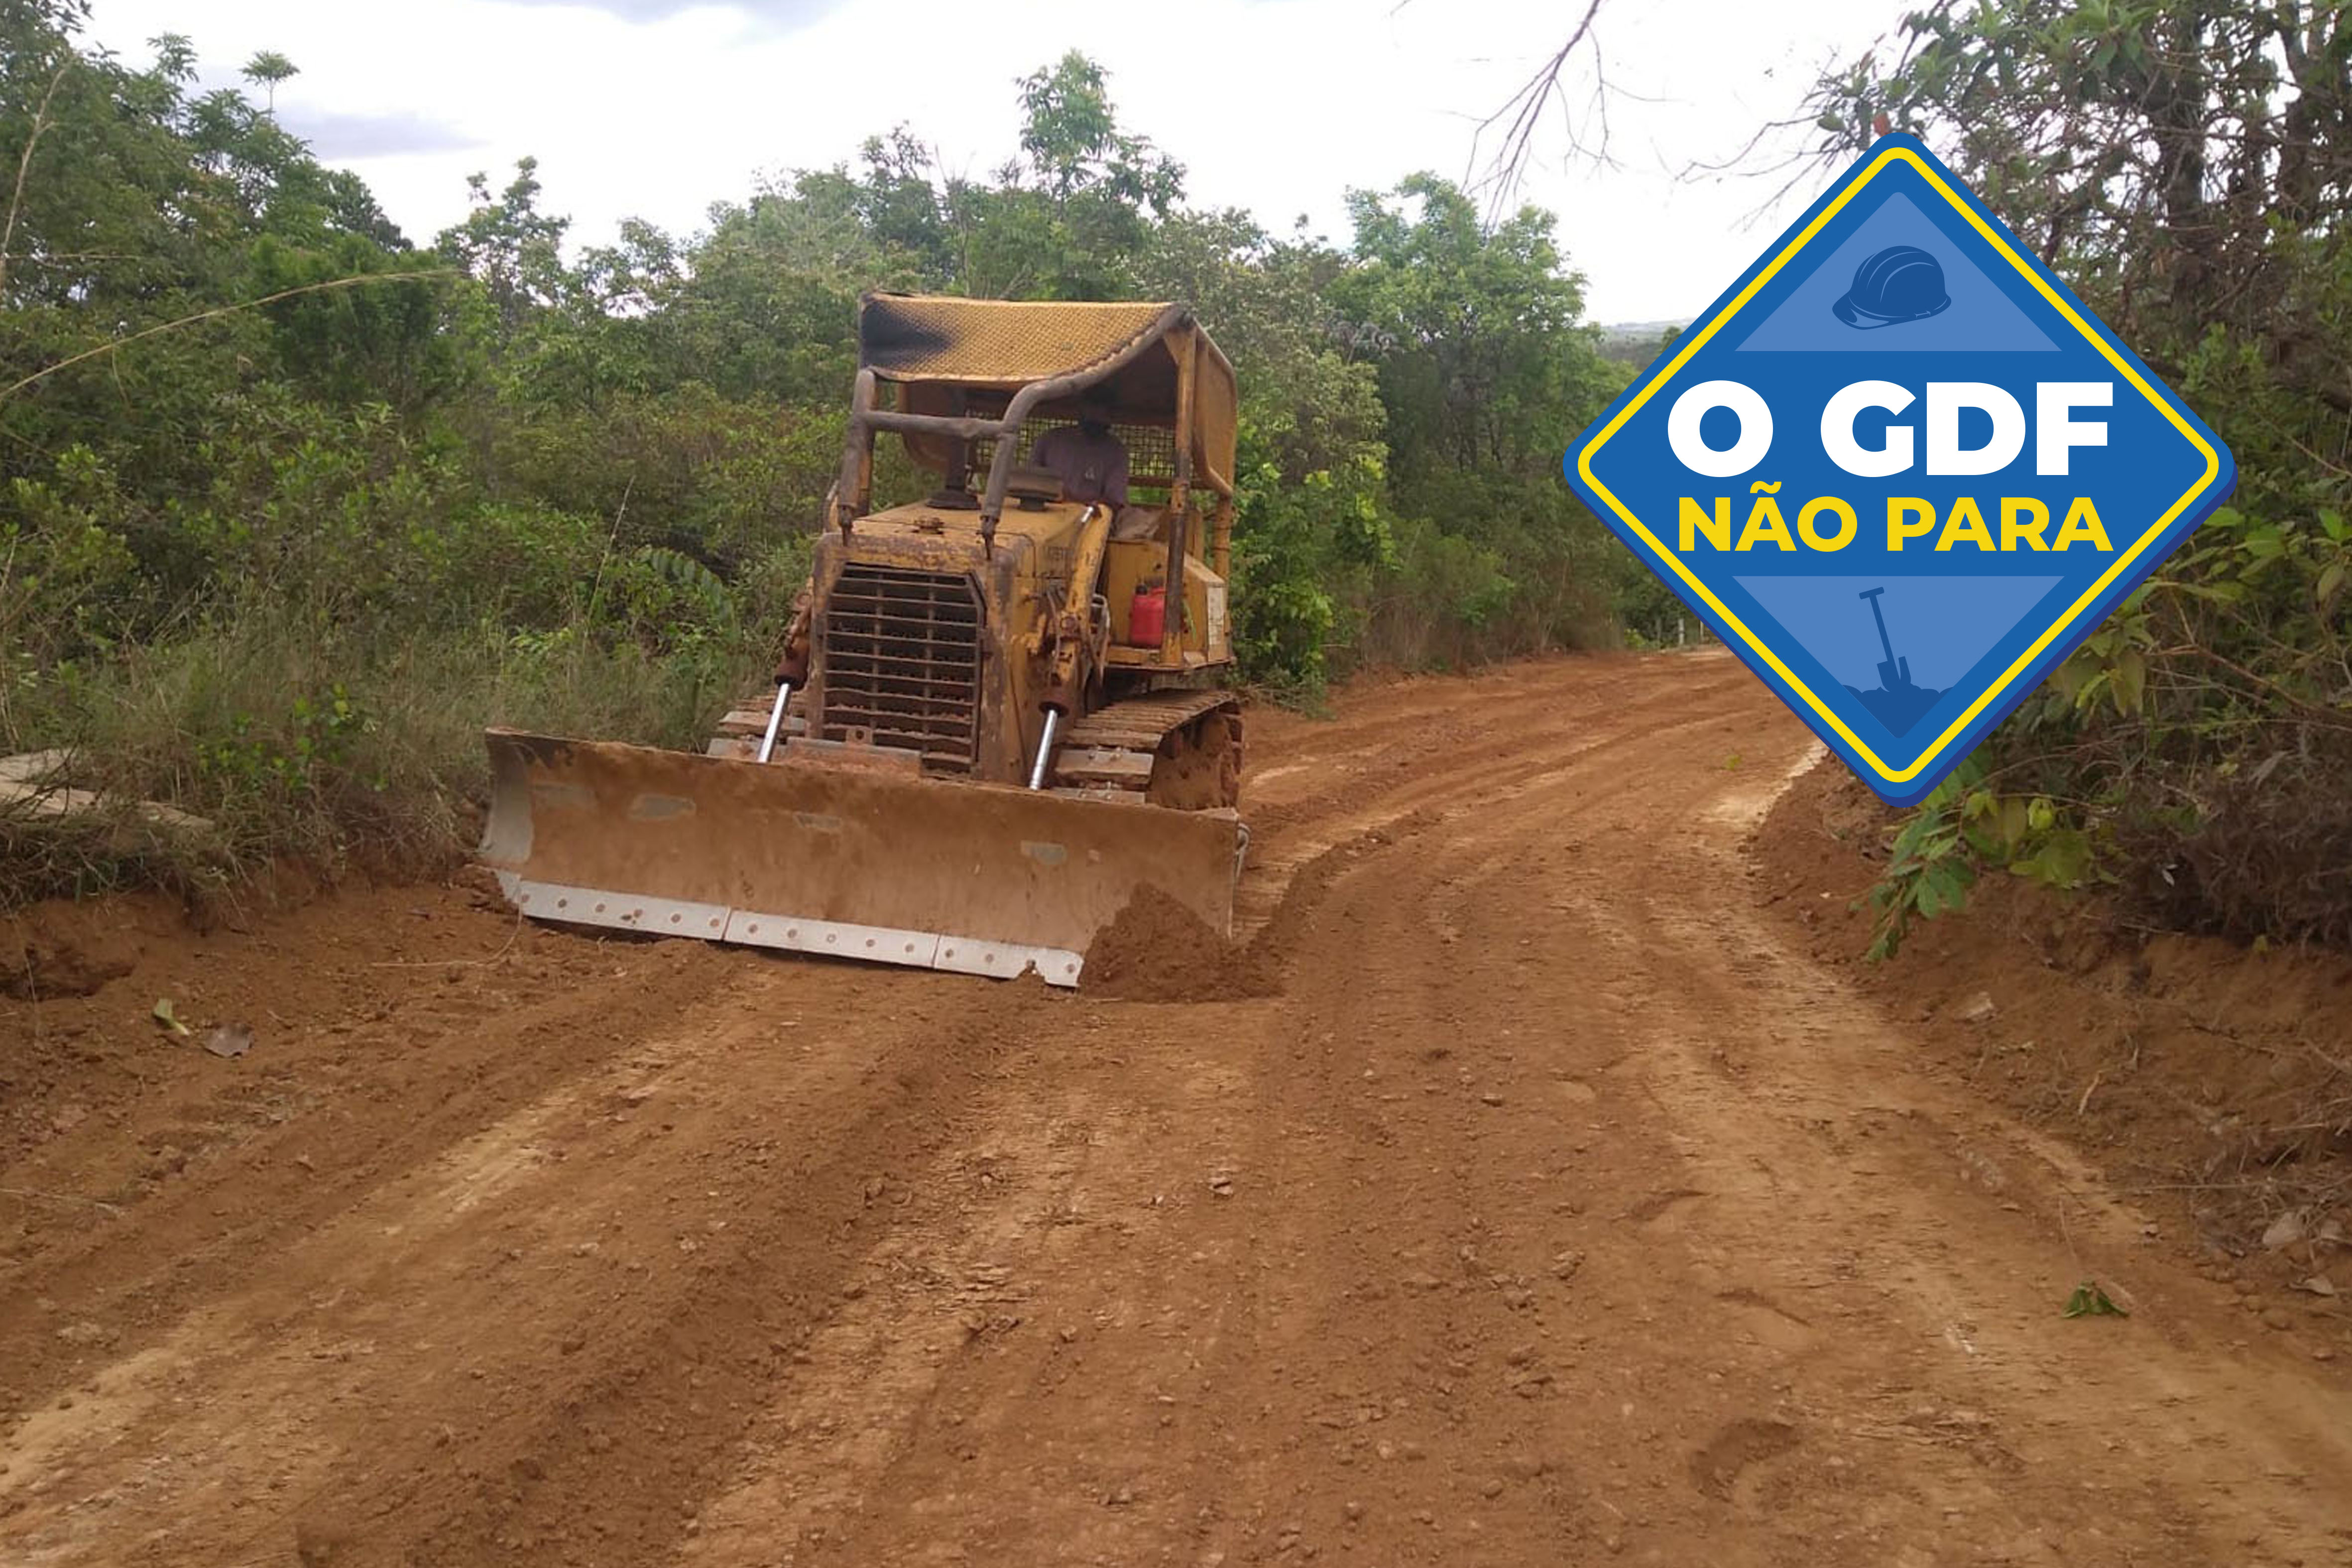 Com mais de 248 km² de extensão, a área rural de Ceilândia está entre as cinco maiores do Distrito Federal | Foto: Divulgação/GDF Presente